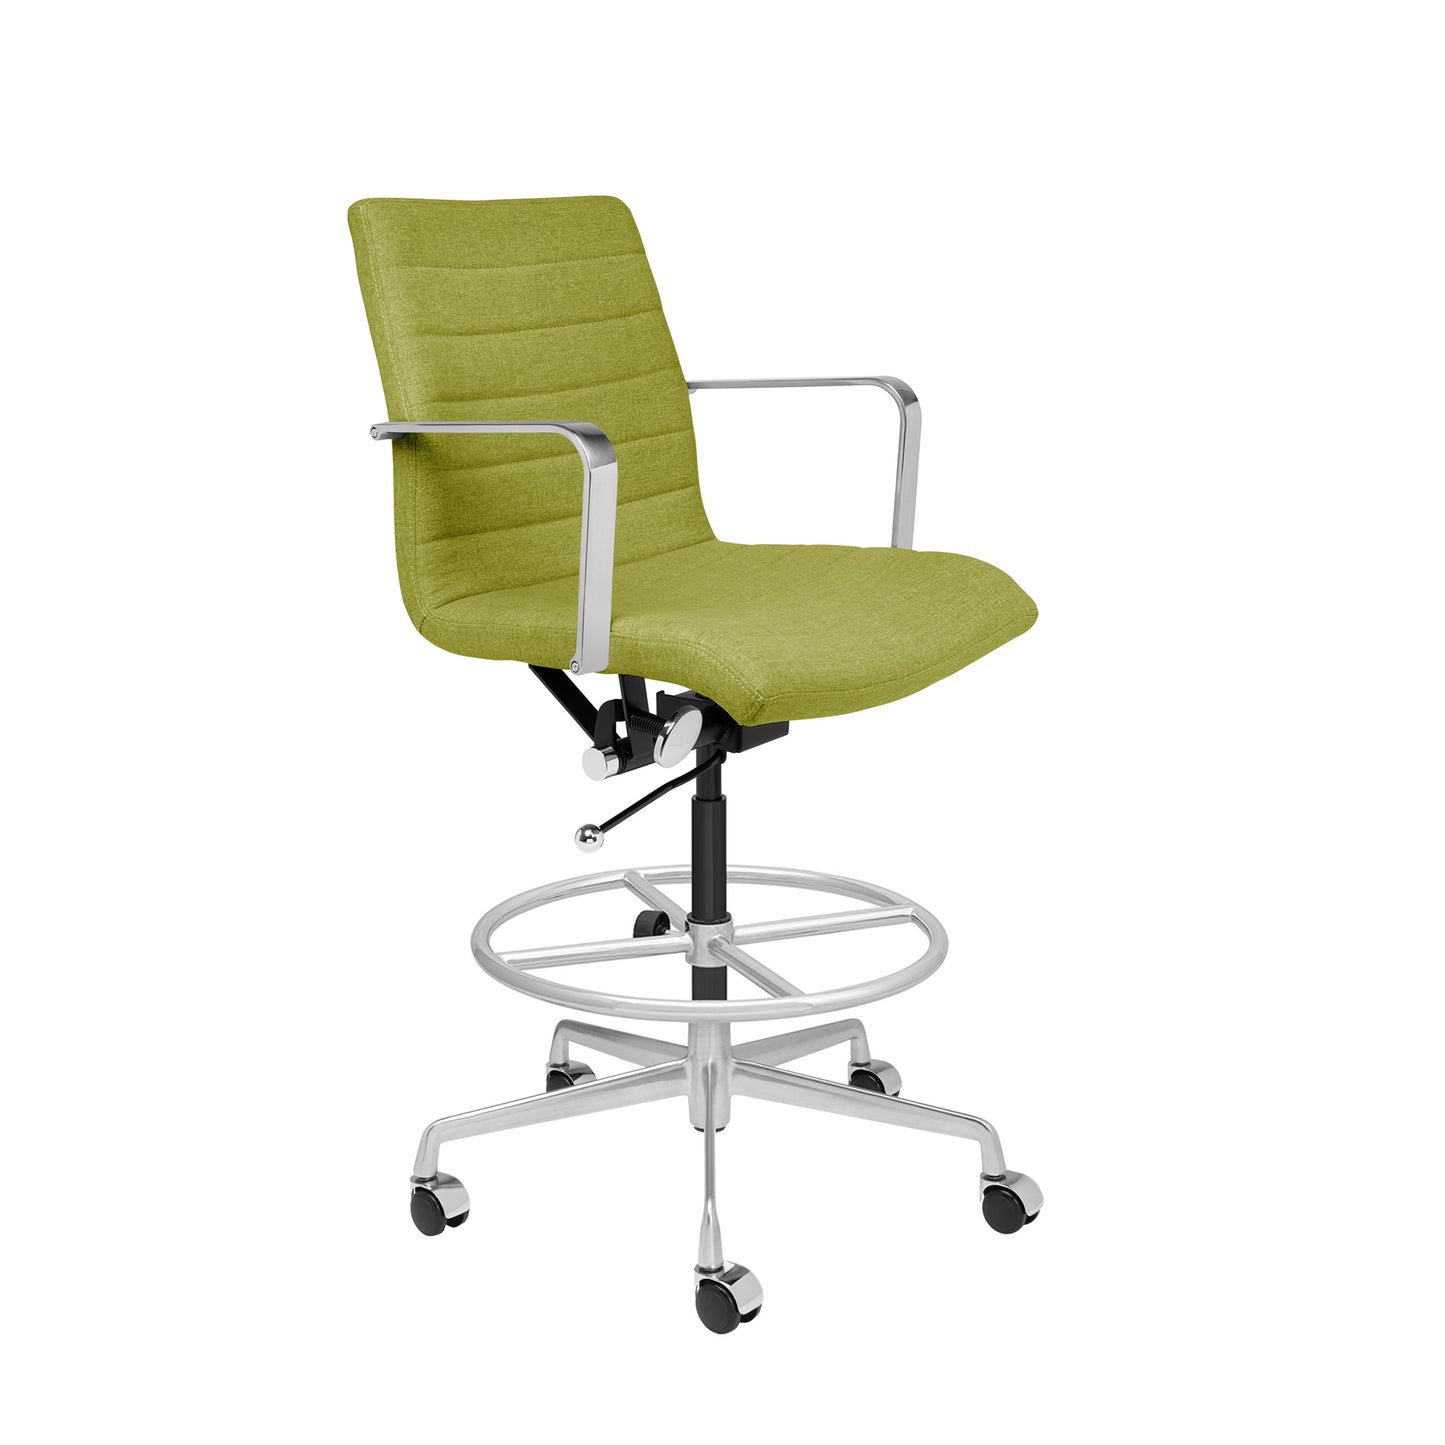 SHIPS MAY 7TH - SOHO II Ribbed Drafting Chair (Green Fabric)